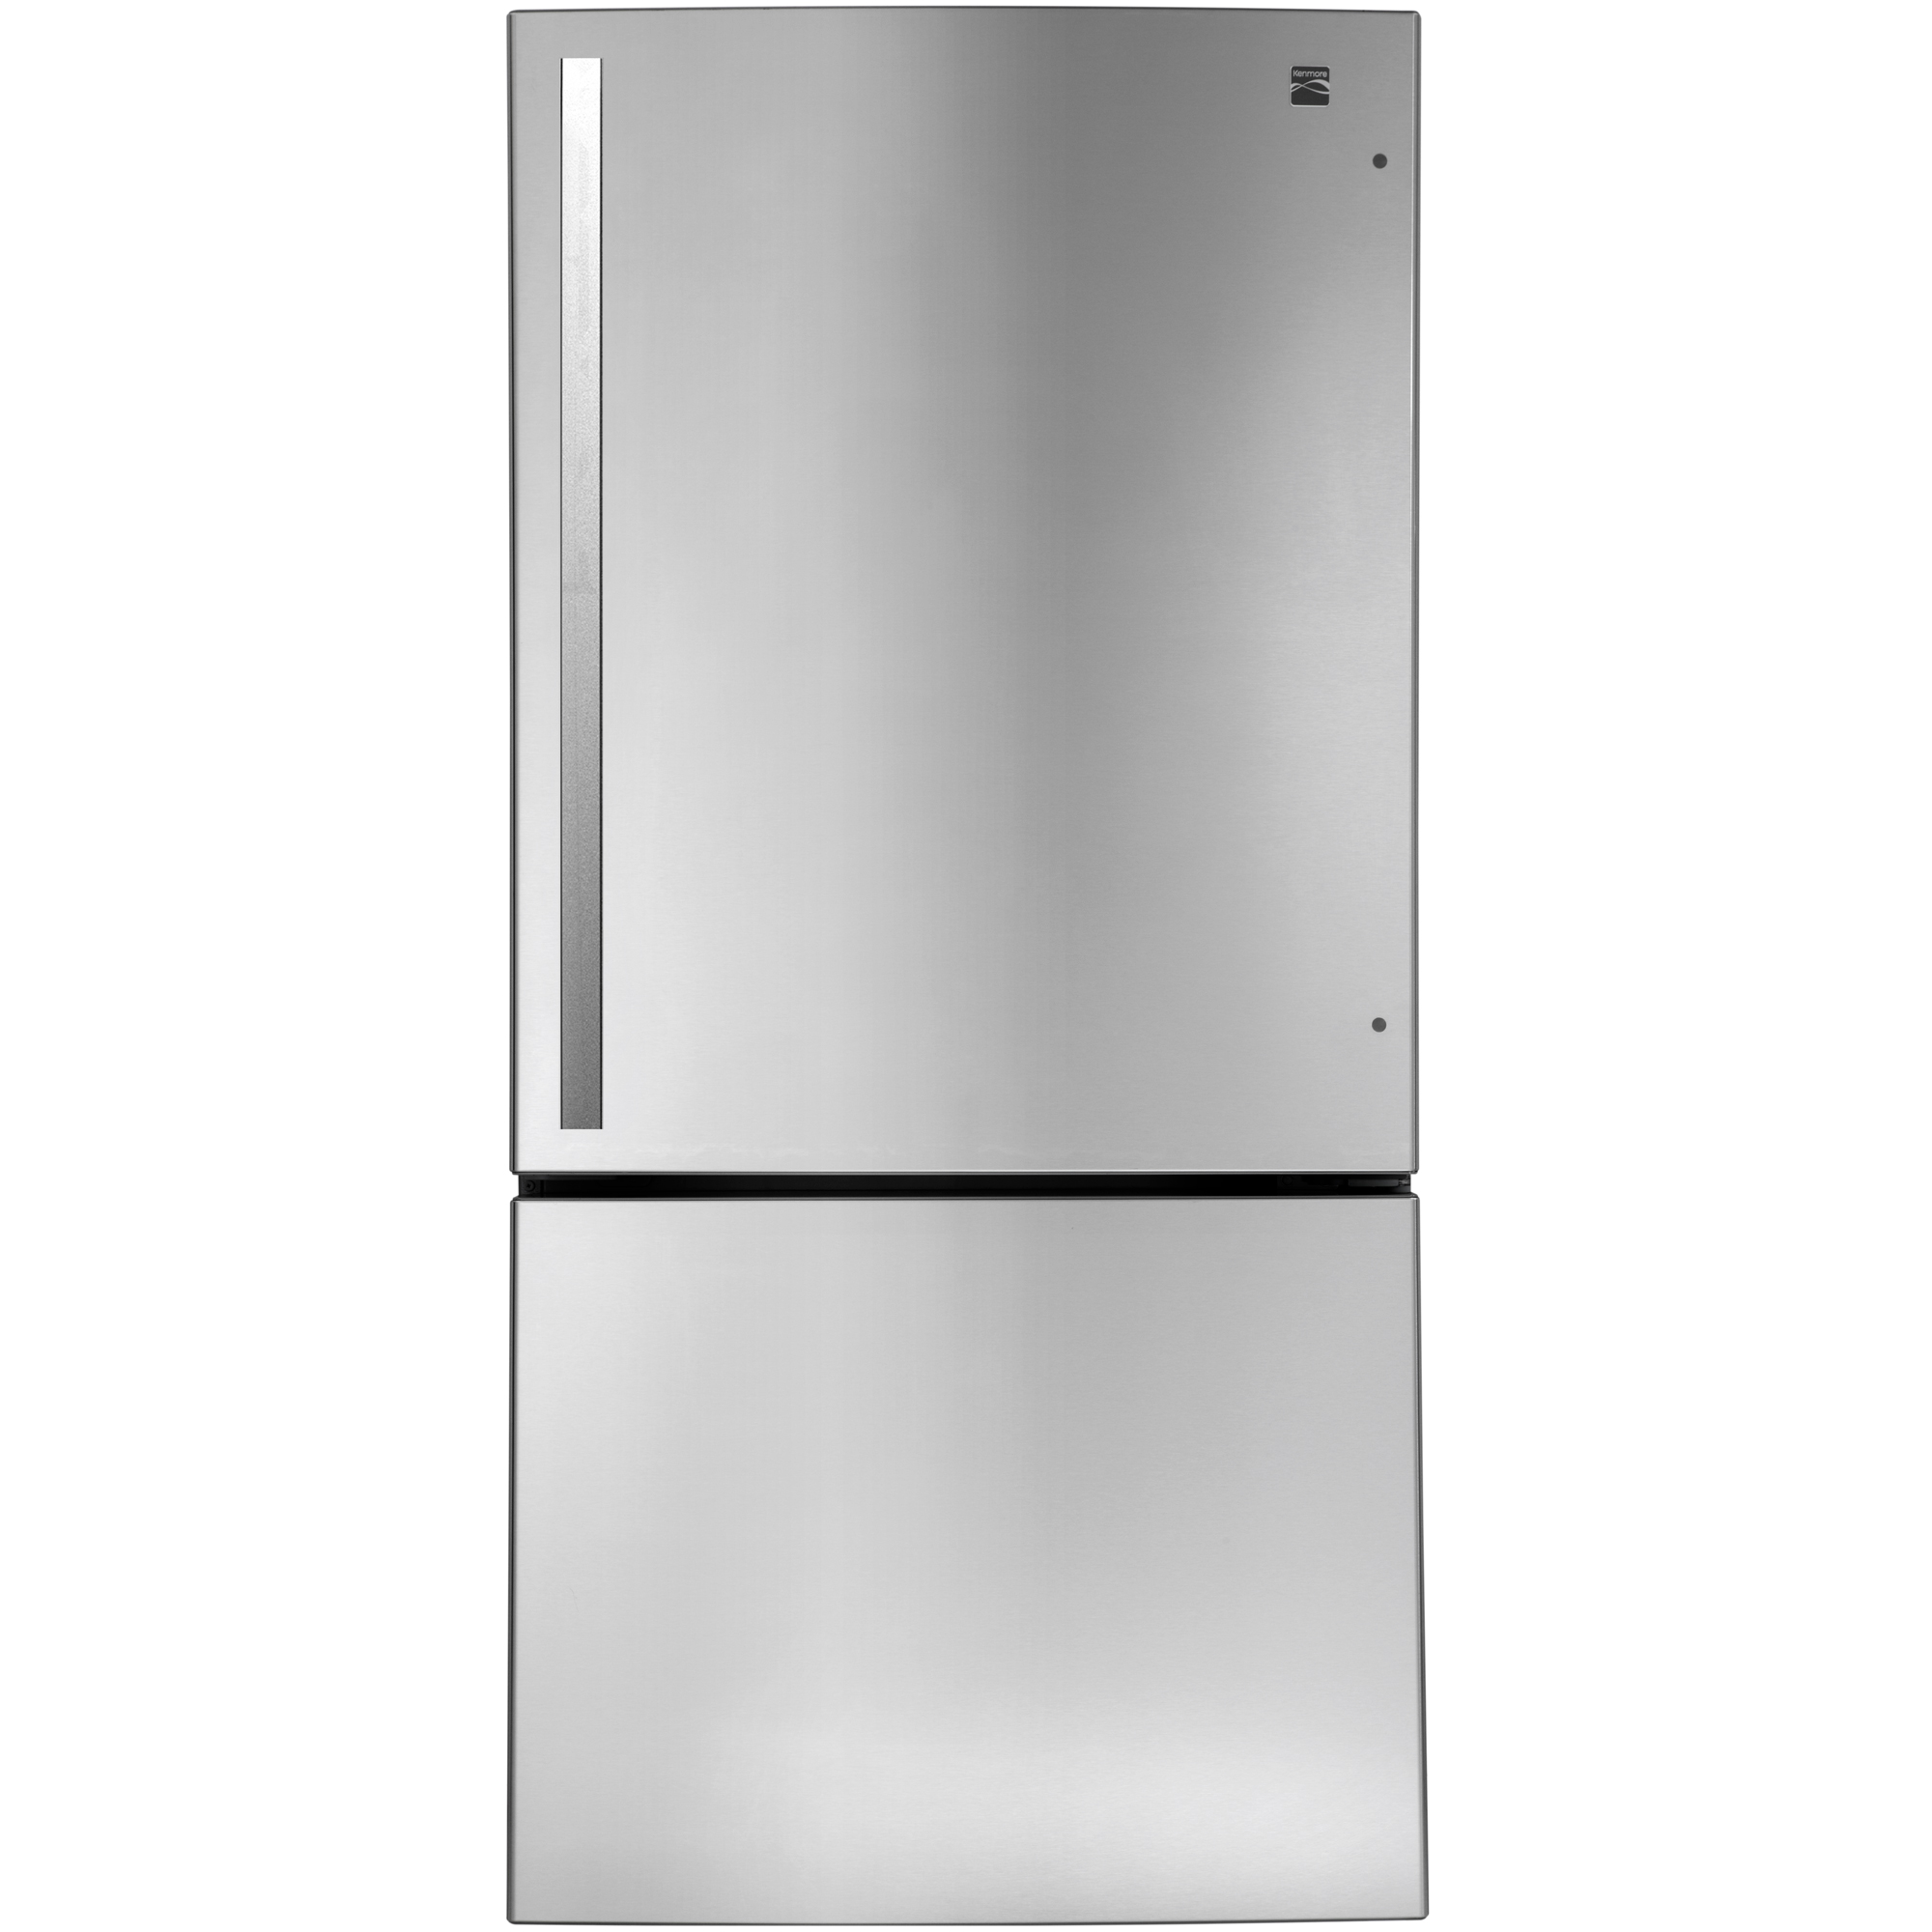 Kenmore 79443 24.1 cu. ft. Bottom-Freezer Refrigerator